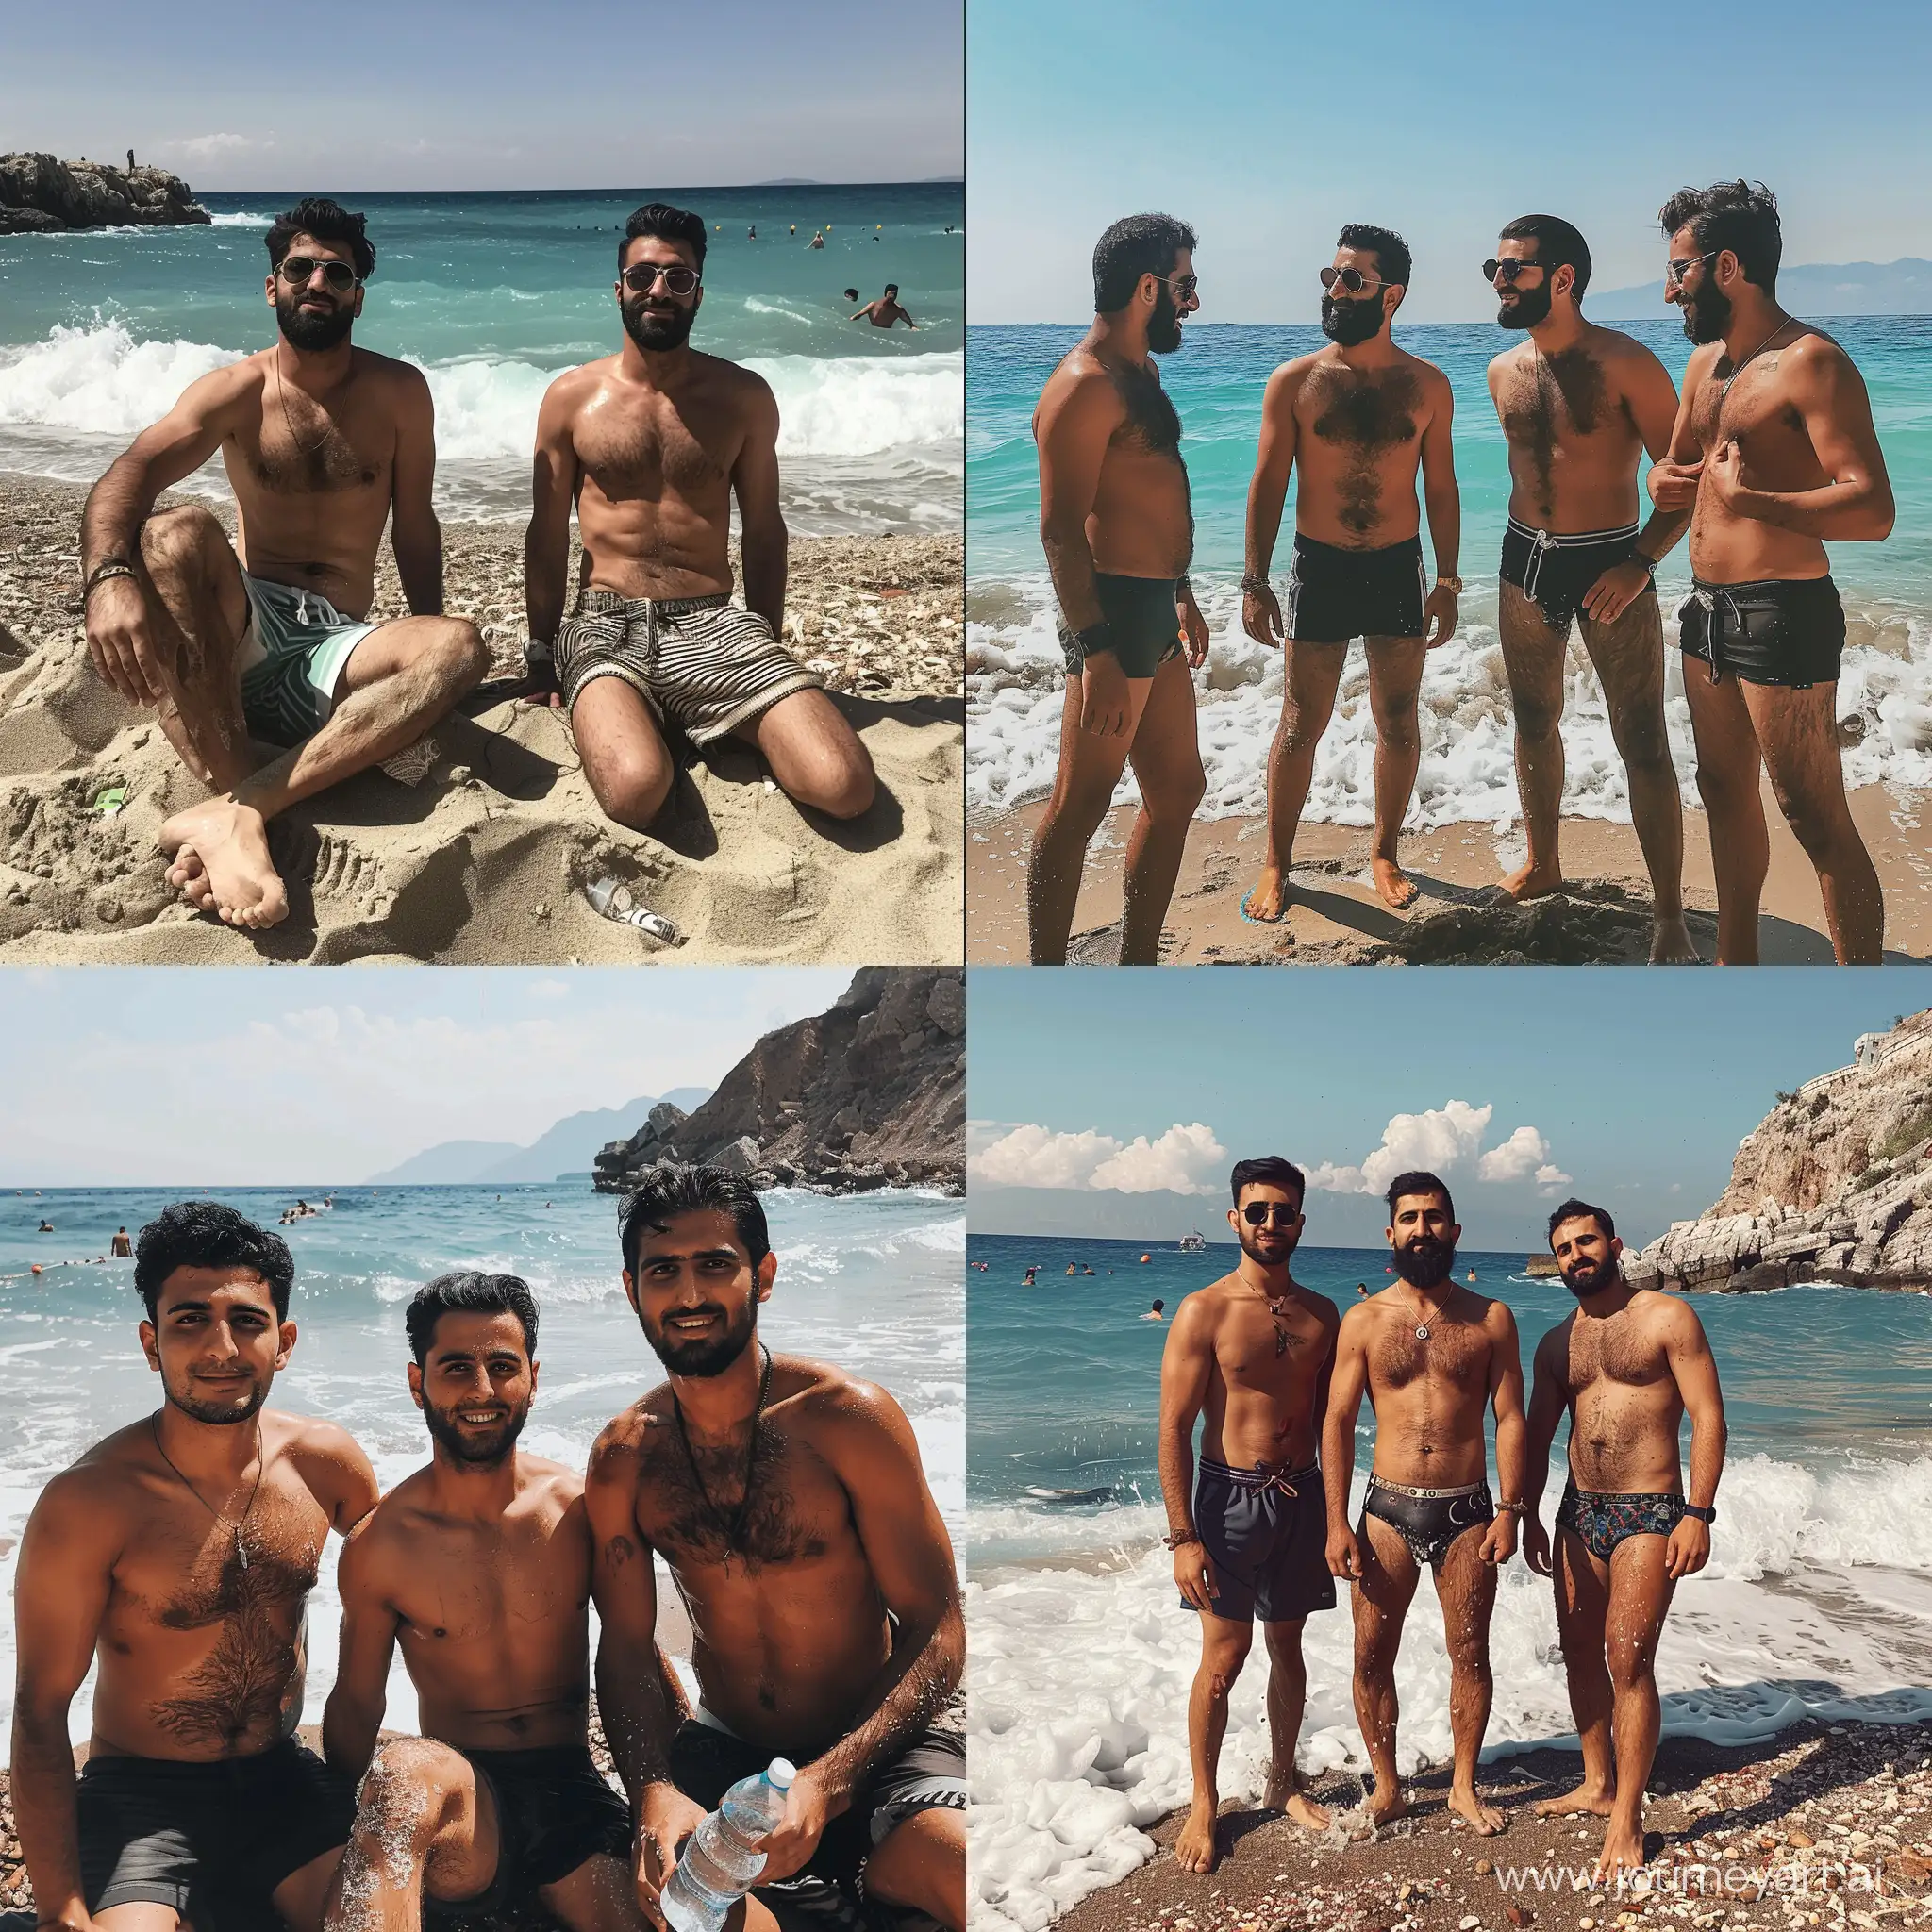 Tanned-Iranian-Men-Enjoying-Beach-Time-in-Antalya